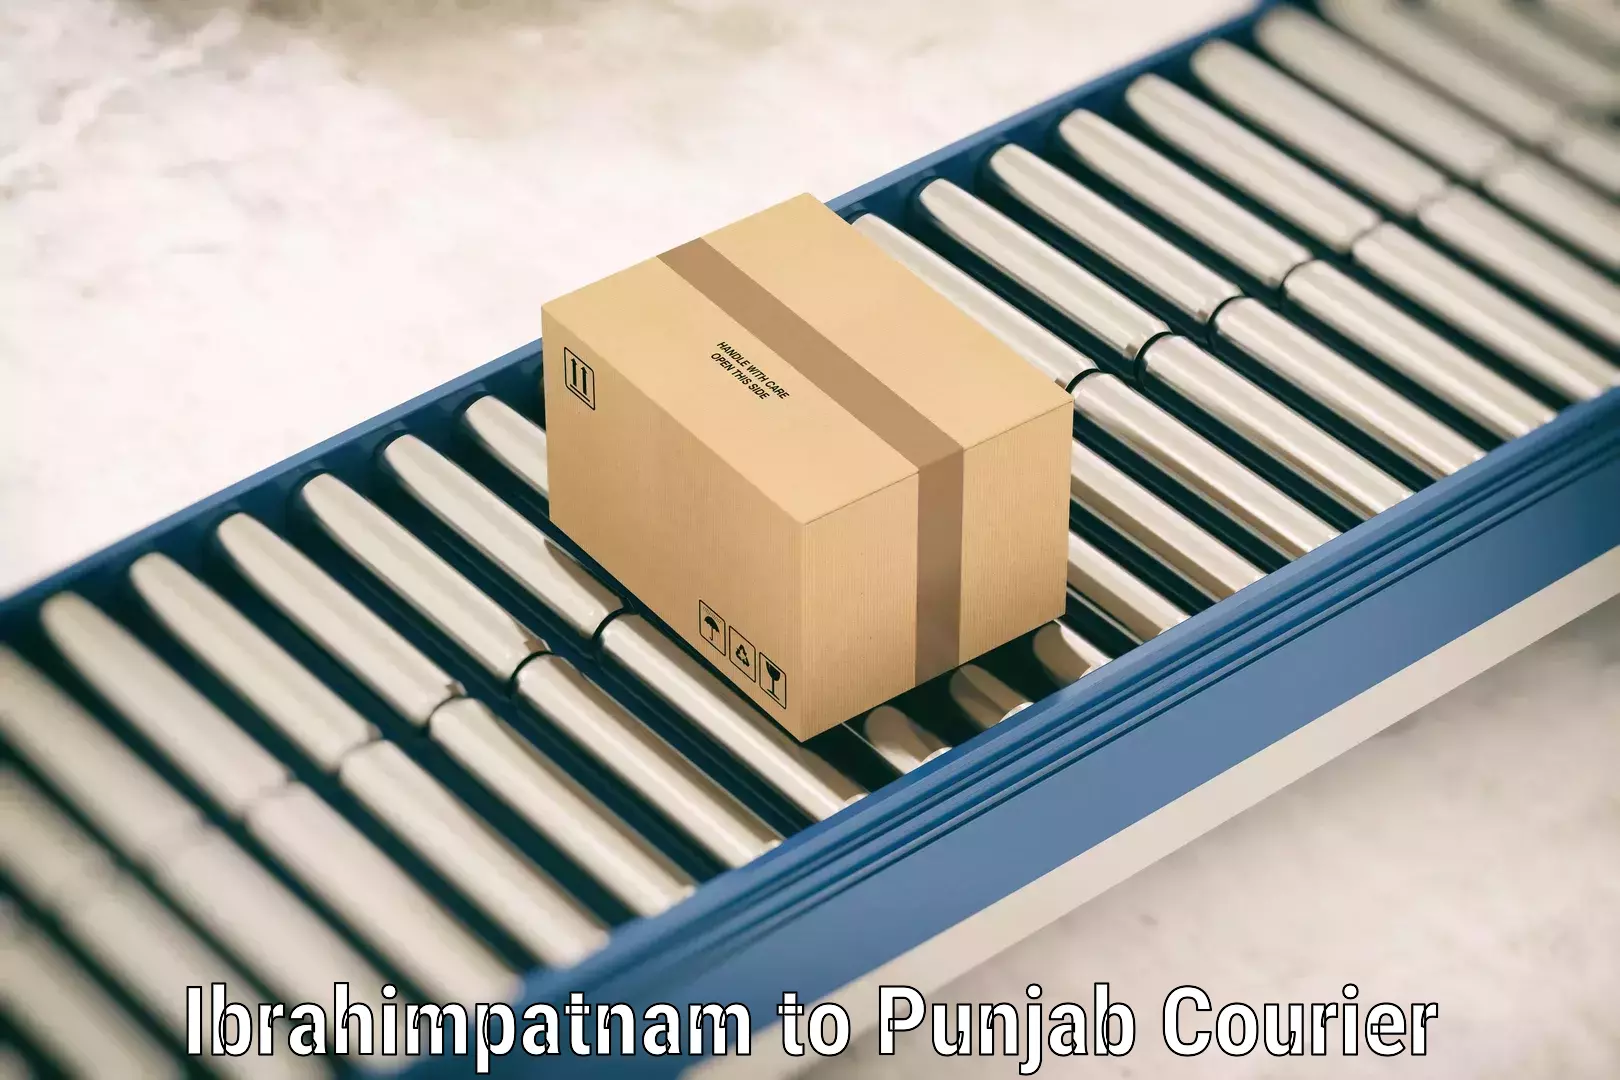 Baggage transport management Ibrahimpatnam to Punjab